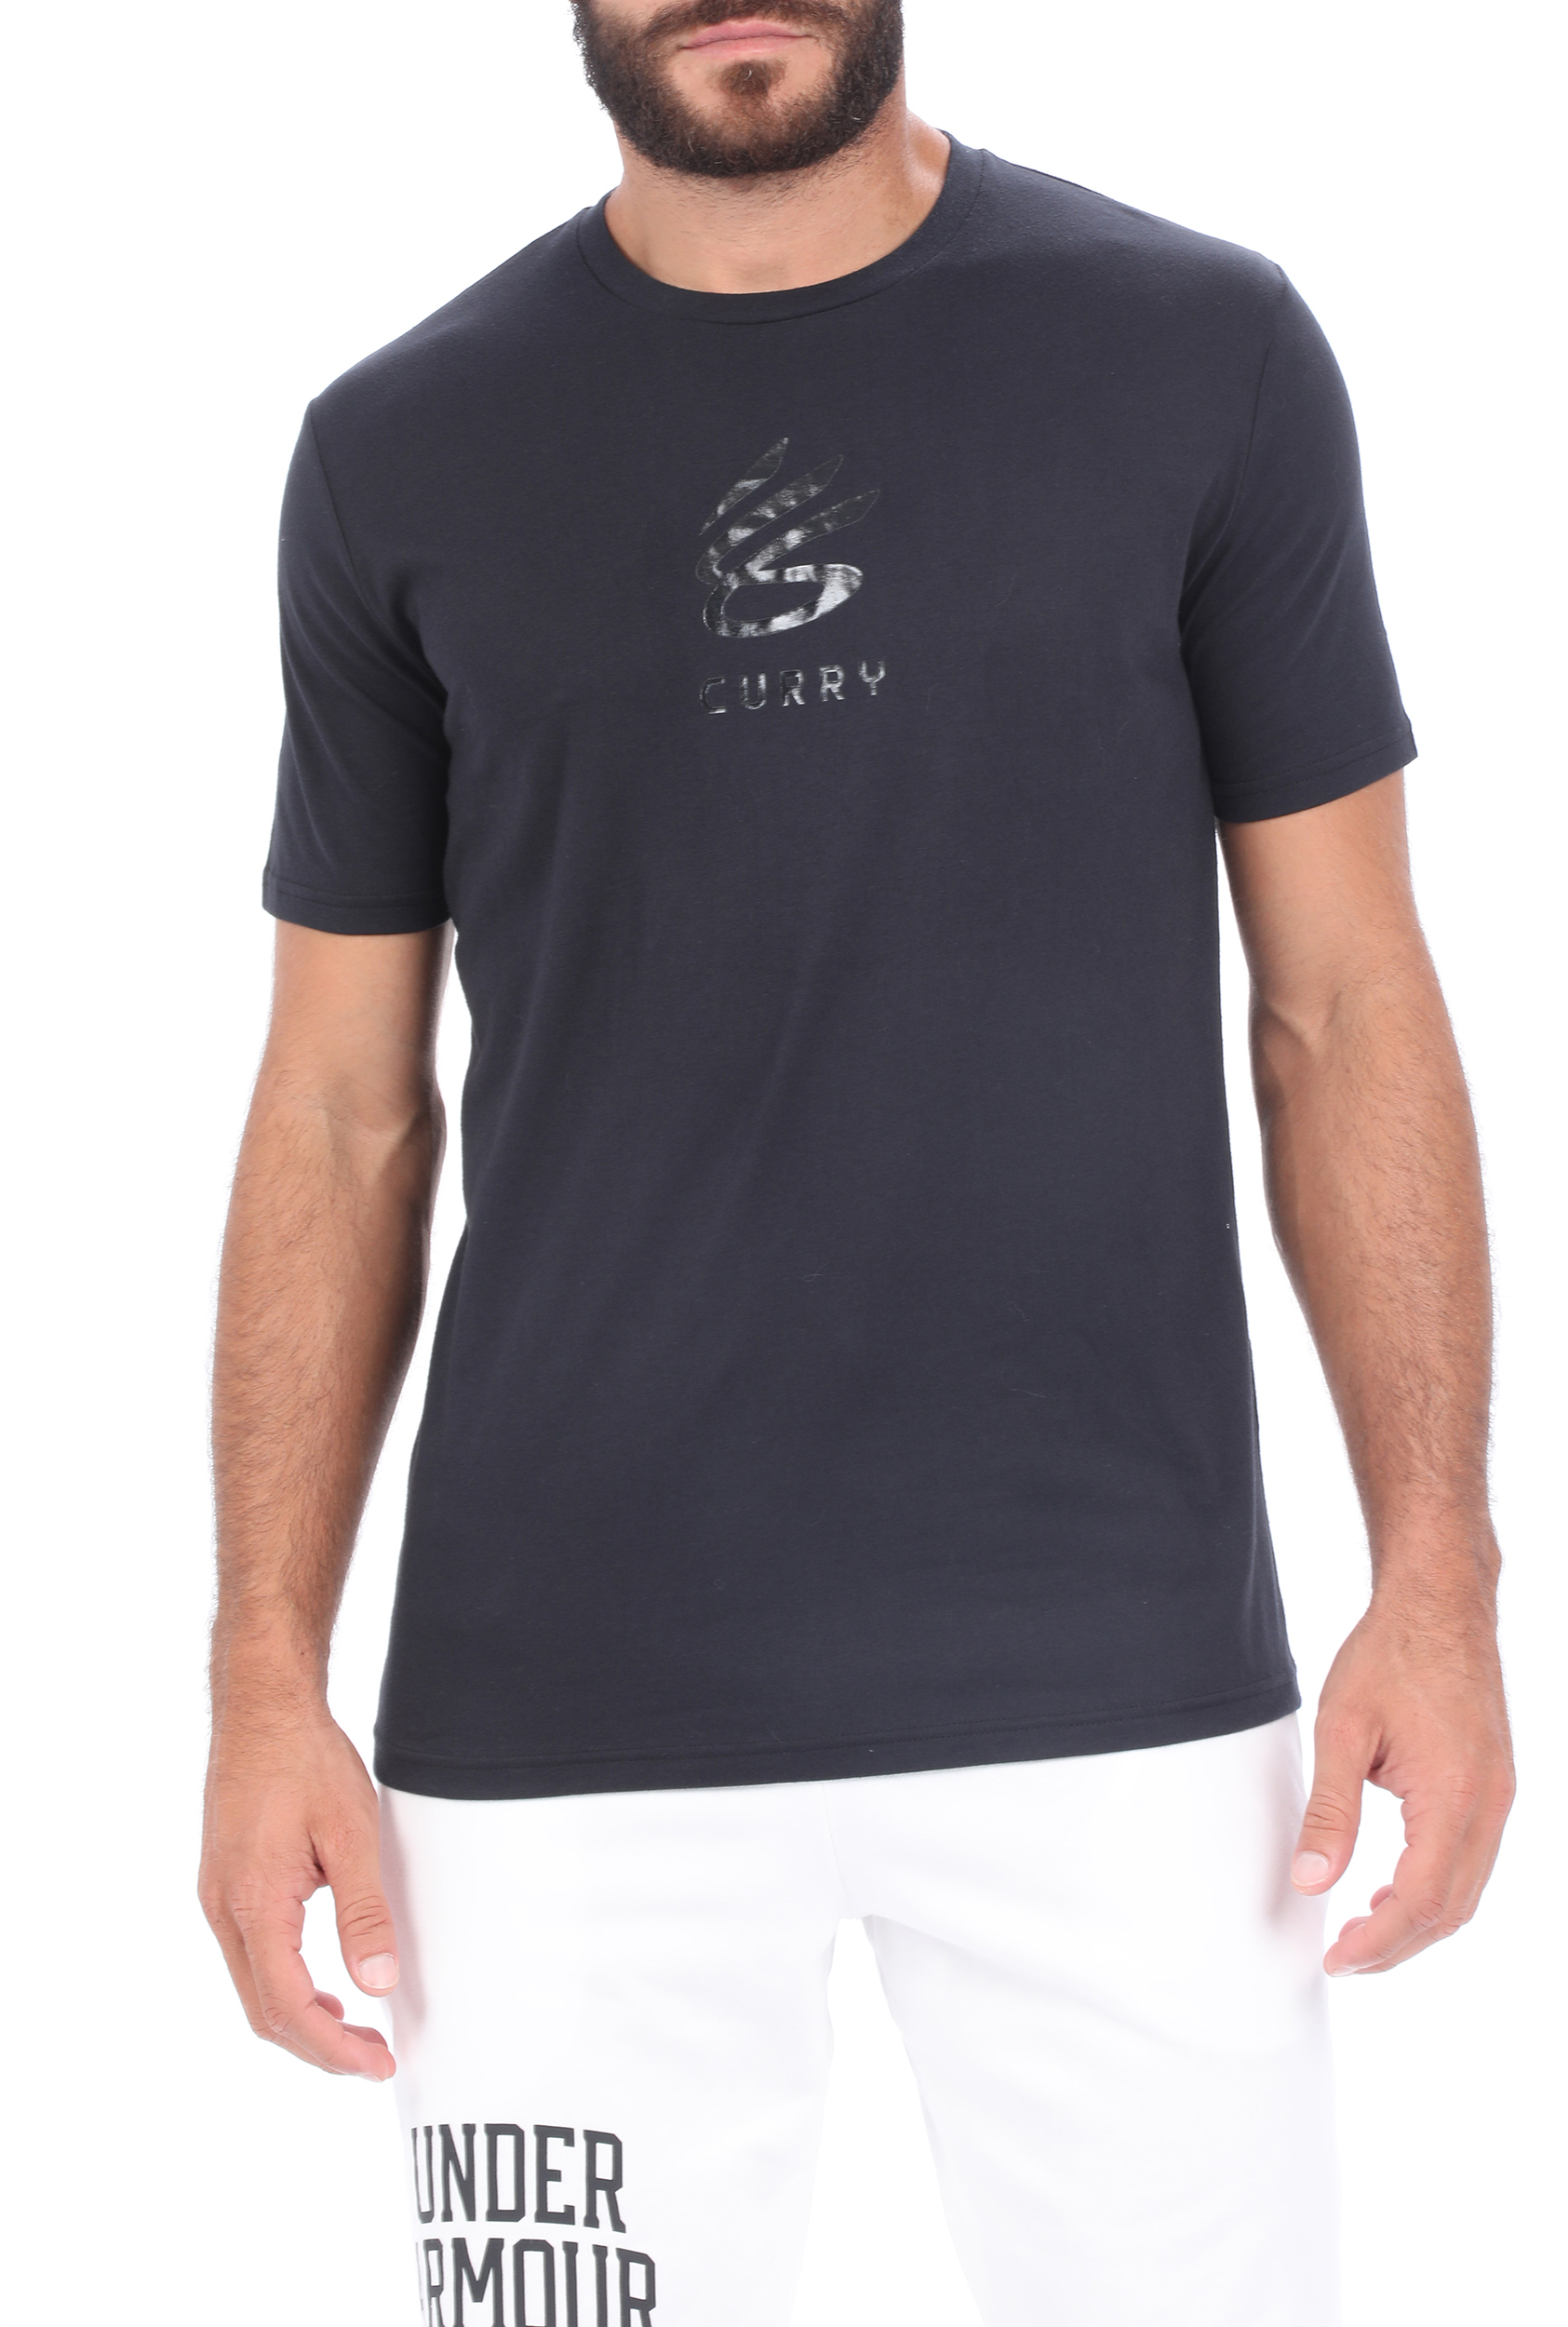 Ανδρικά/Ρούχα/Αθλητικά/T-shirt UNDER ARMOUR - Ανδρικό t-shirt UNDER ARMOUR CURRY UNDRTD SPLASH μαύρο